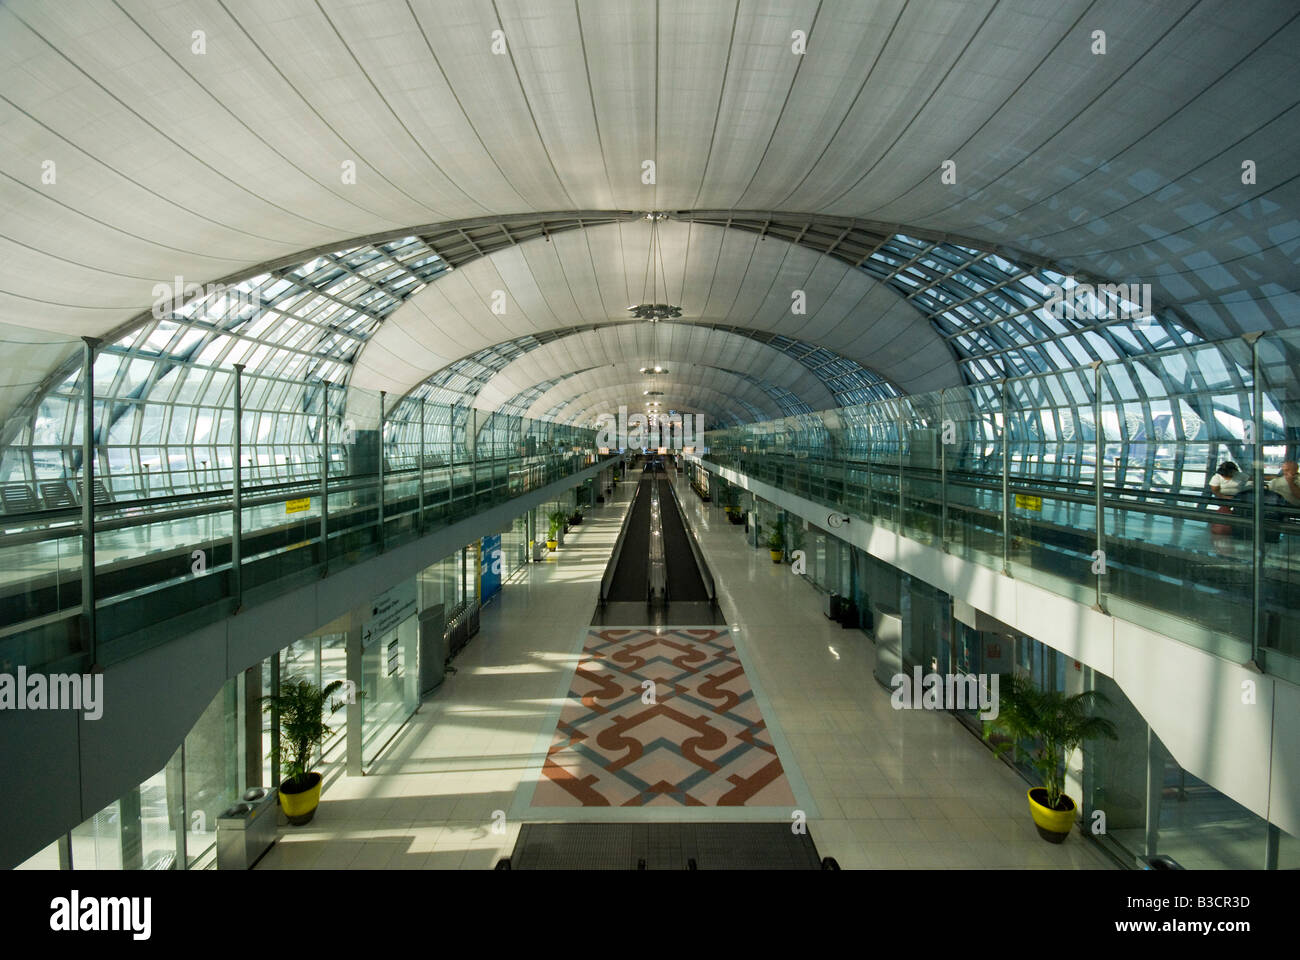 View inside Suwanapoom airport Bangkok Thailand Stock Photo